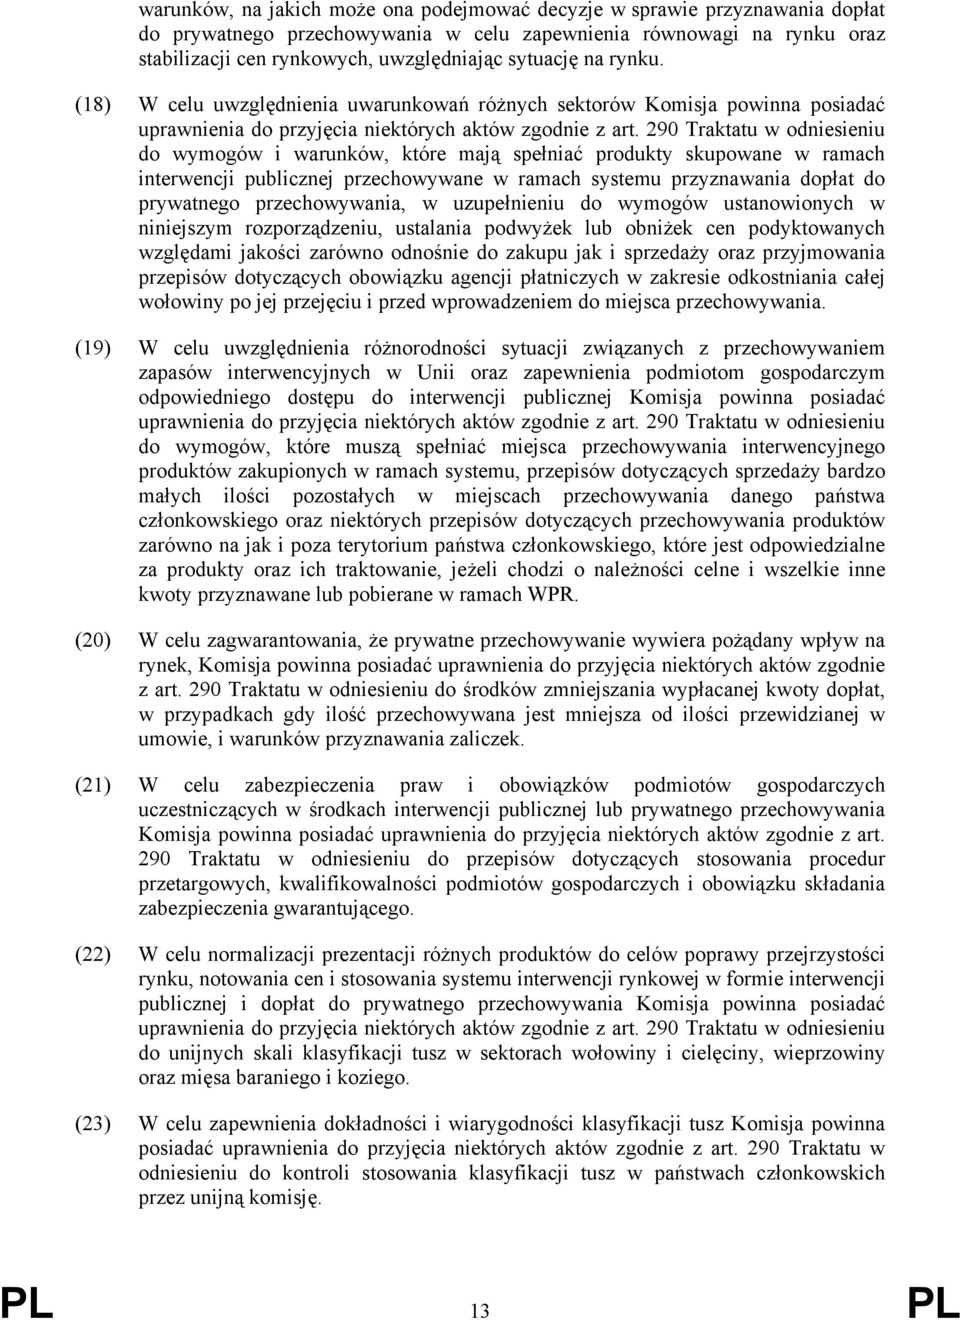 290 Traktatu w odniesieniu do wymogów i warunków, które mają spełniać produkty skupowane w ramach interwencji publicznej przechowywane w ramach systemu przyznawania dopłat do prywatnego